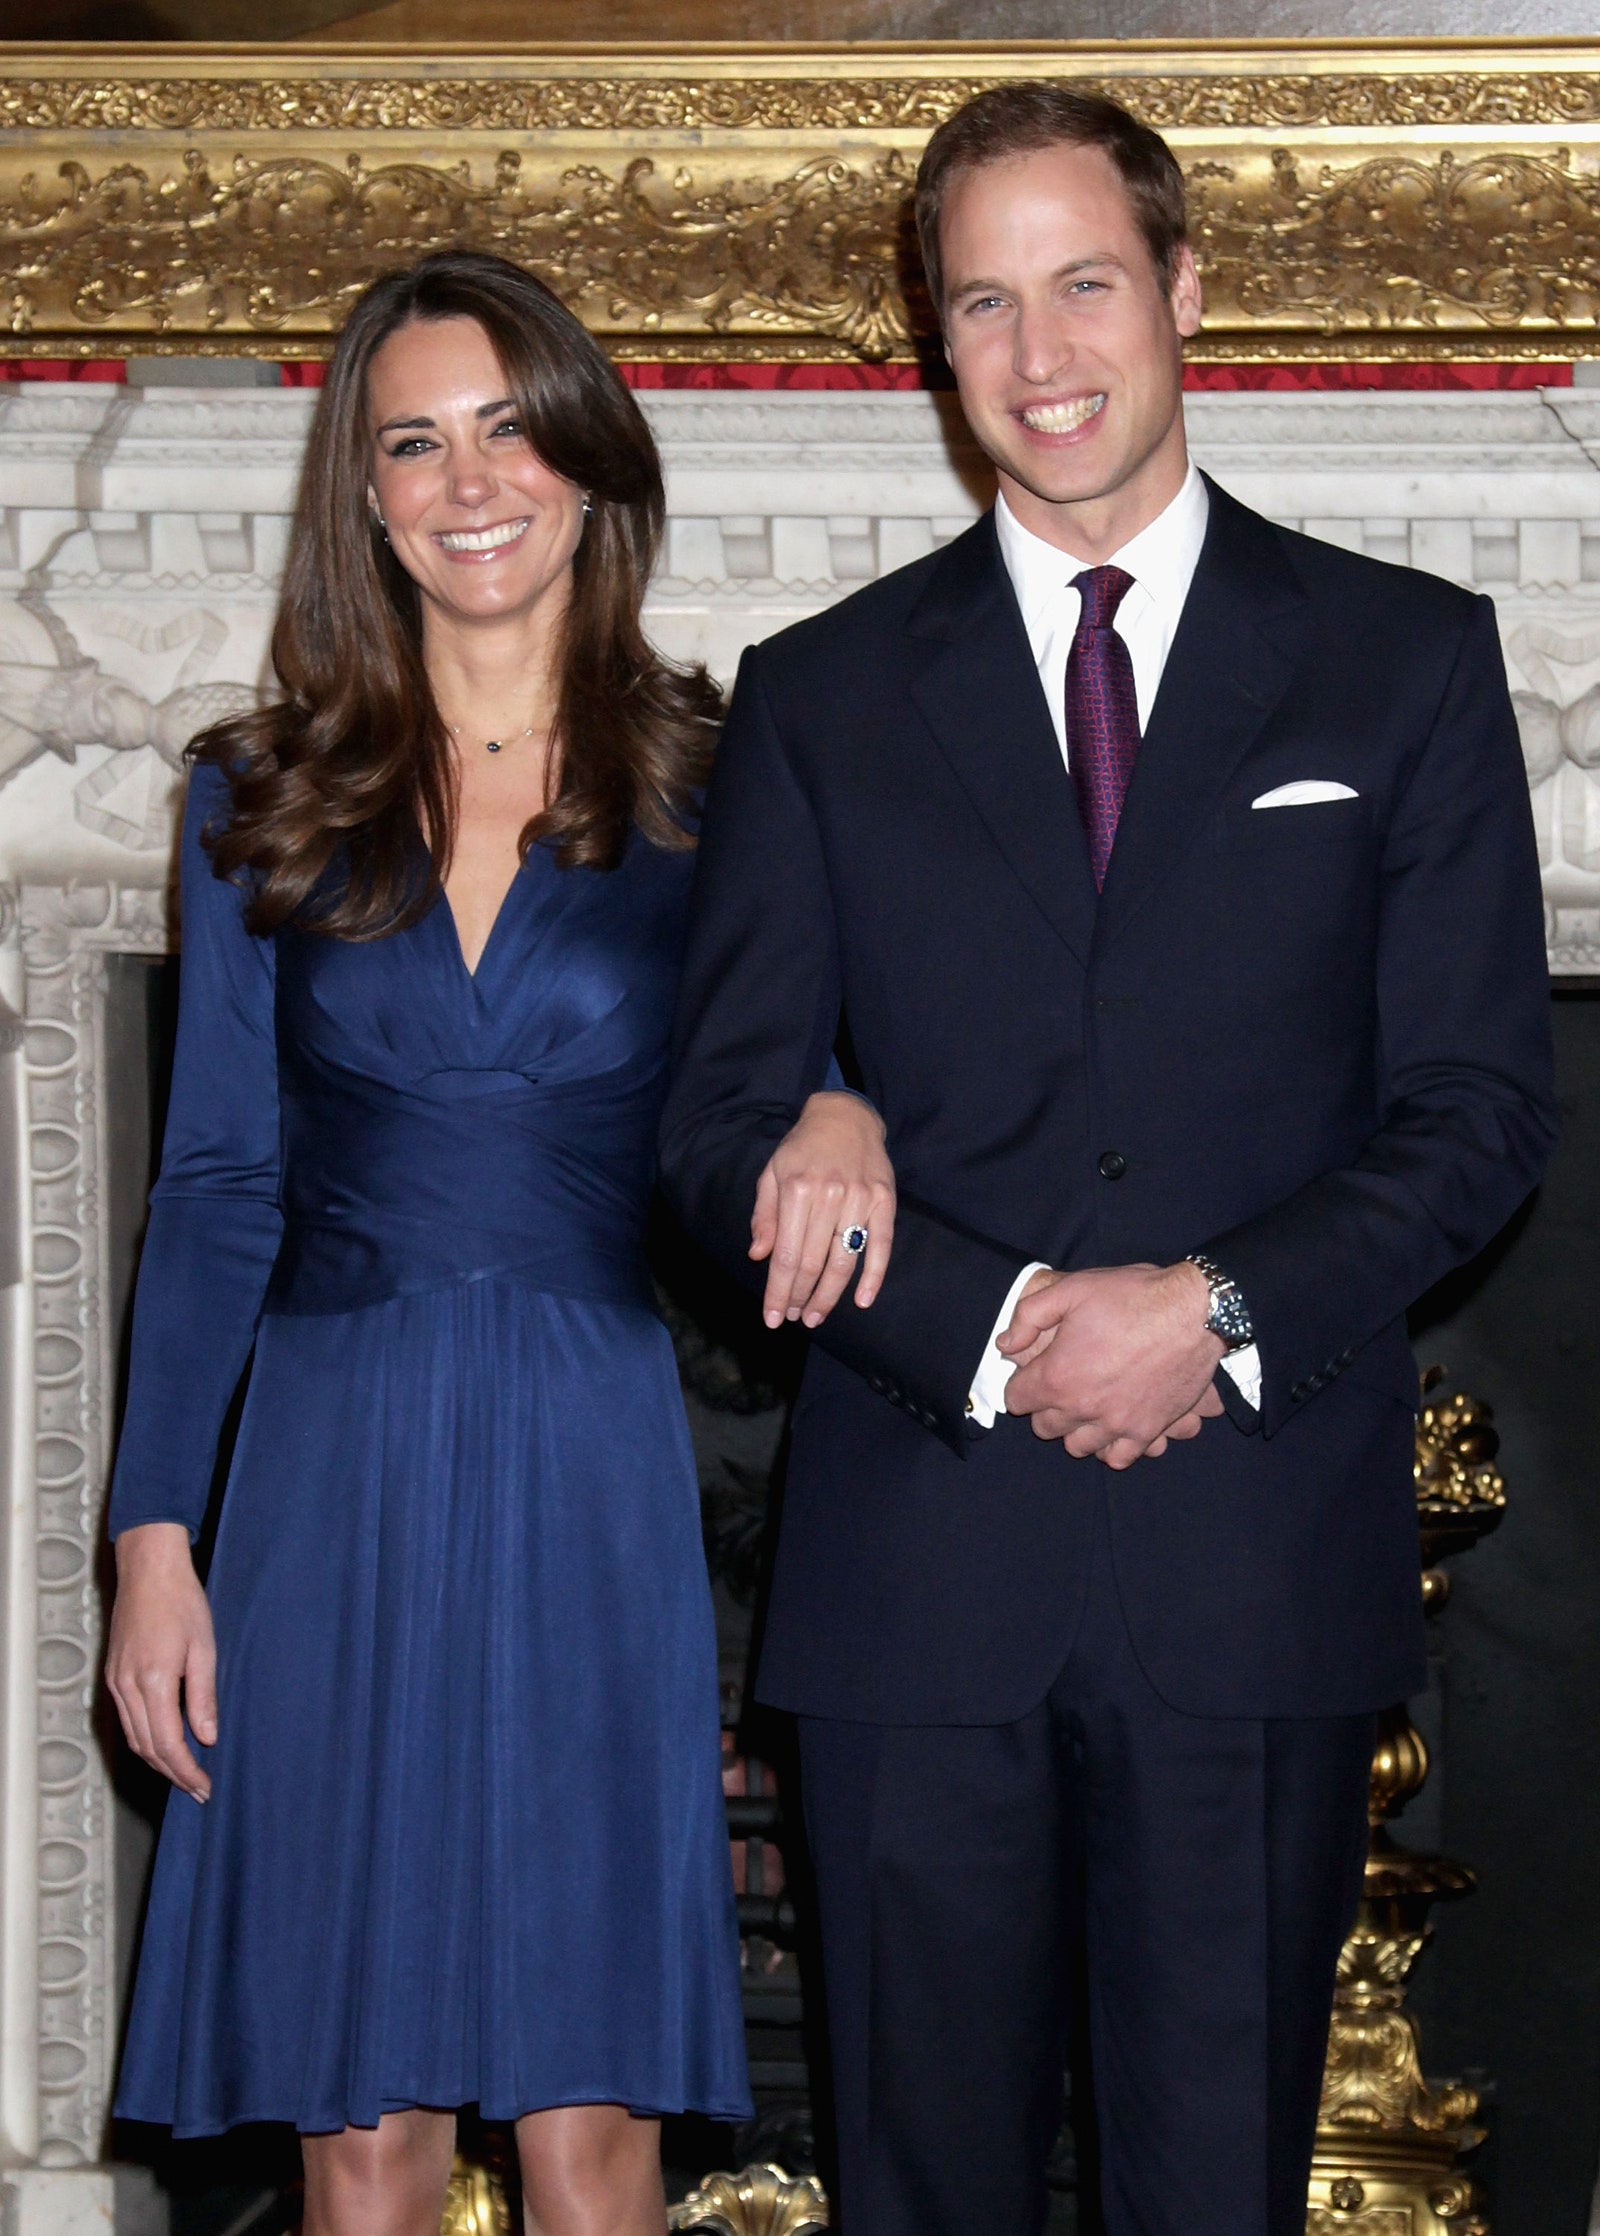 L'image peut contenir des accessoires de cravate Accessoire Prince William Duc de Cambridge Personne humaine Costume Manteau et vêtements